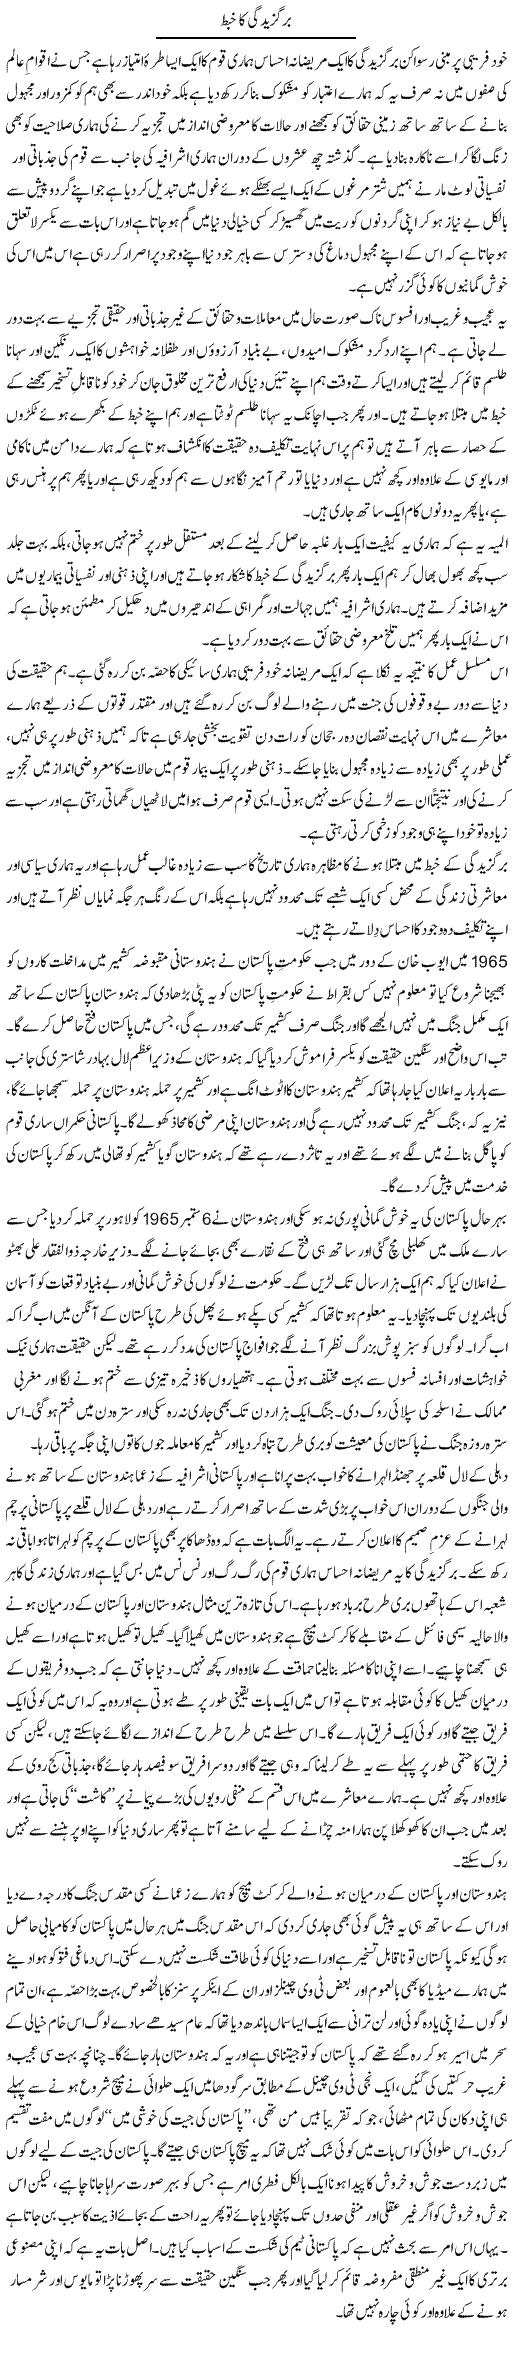 India Pakistan Express Column Anwar Ahsan 8 April 2011